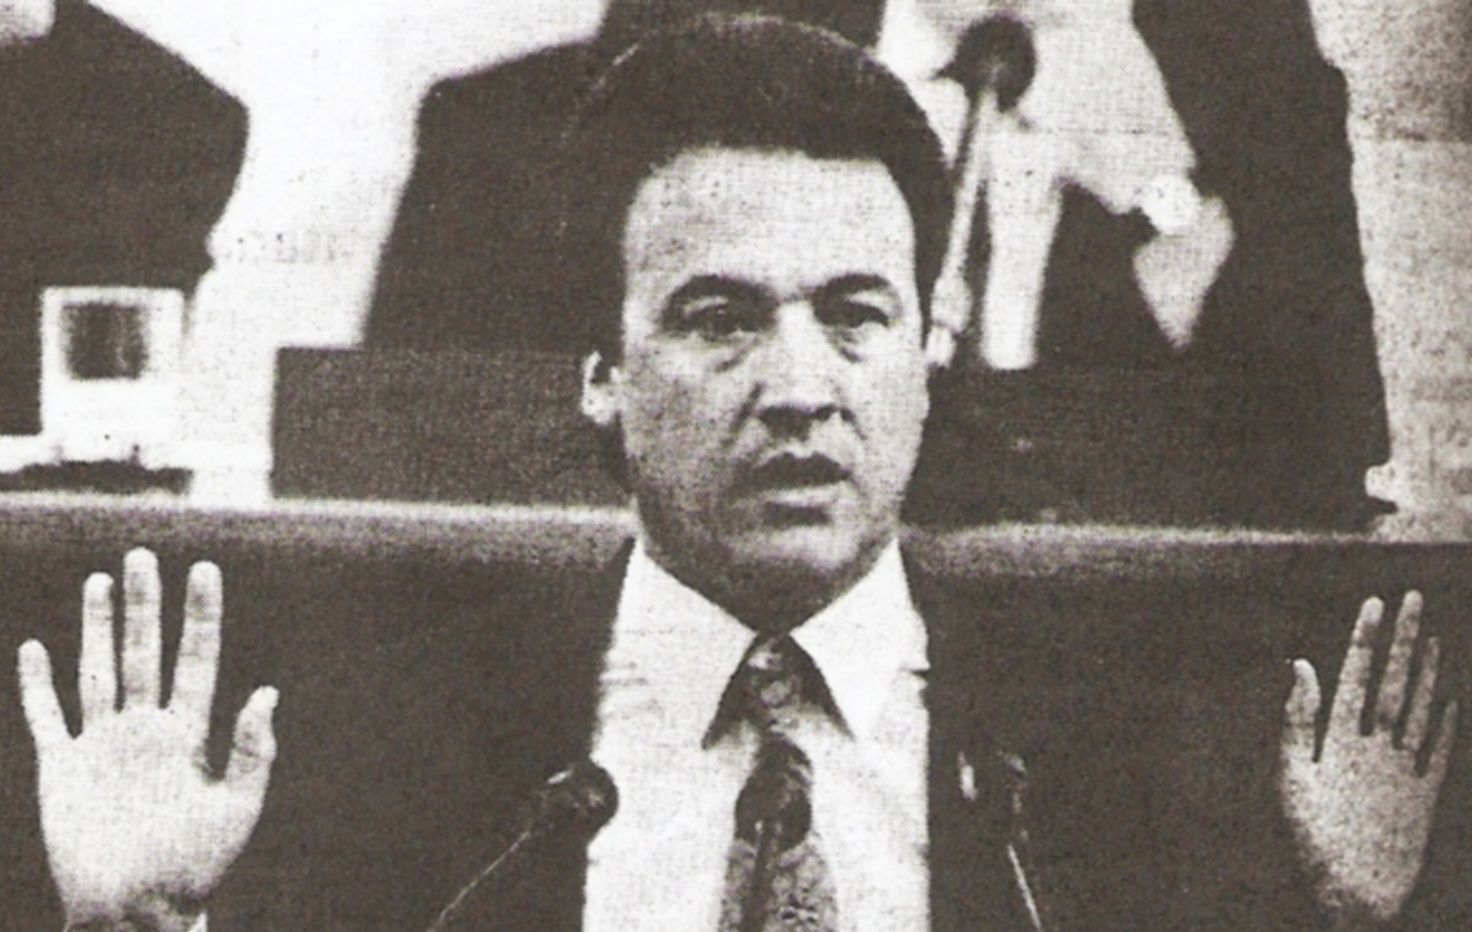 Pacheco en una fotografía de los años 80.